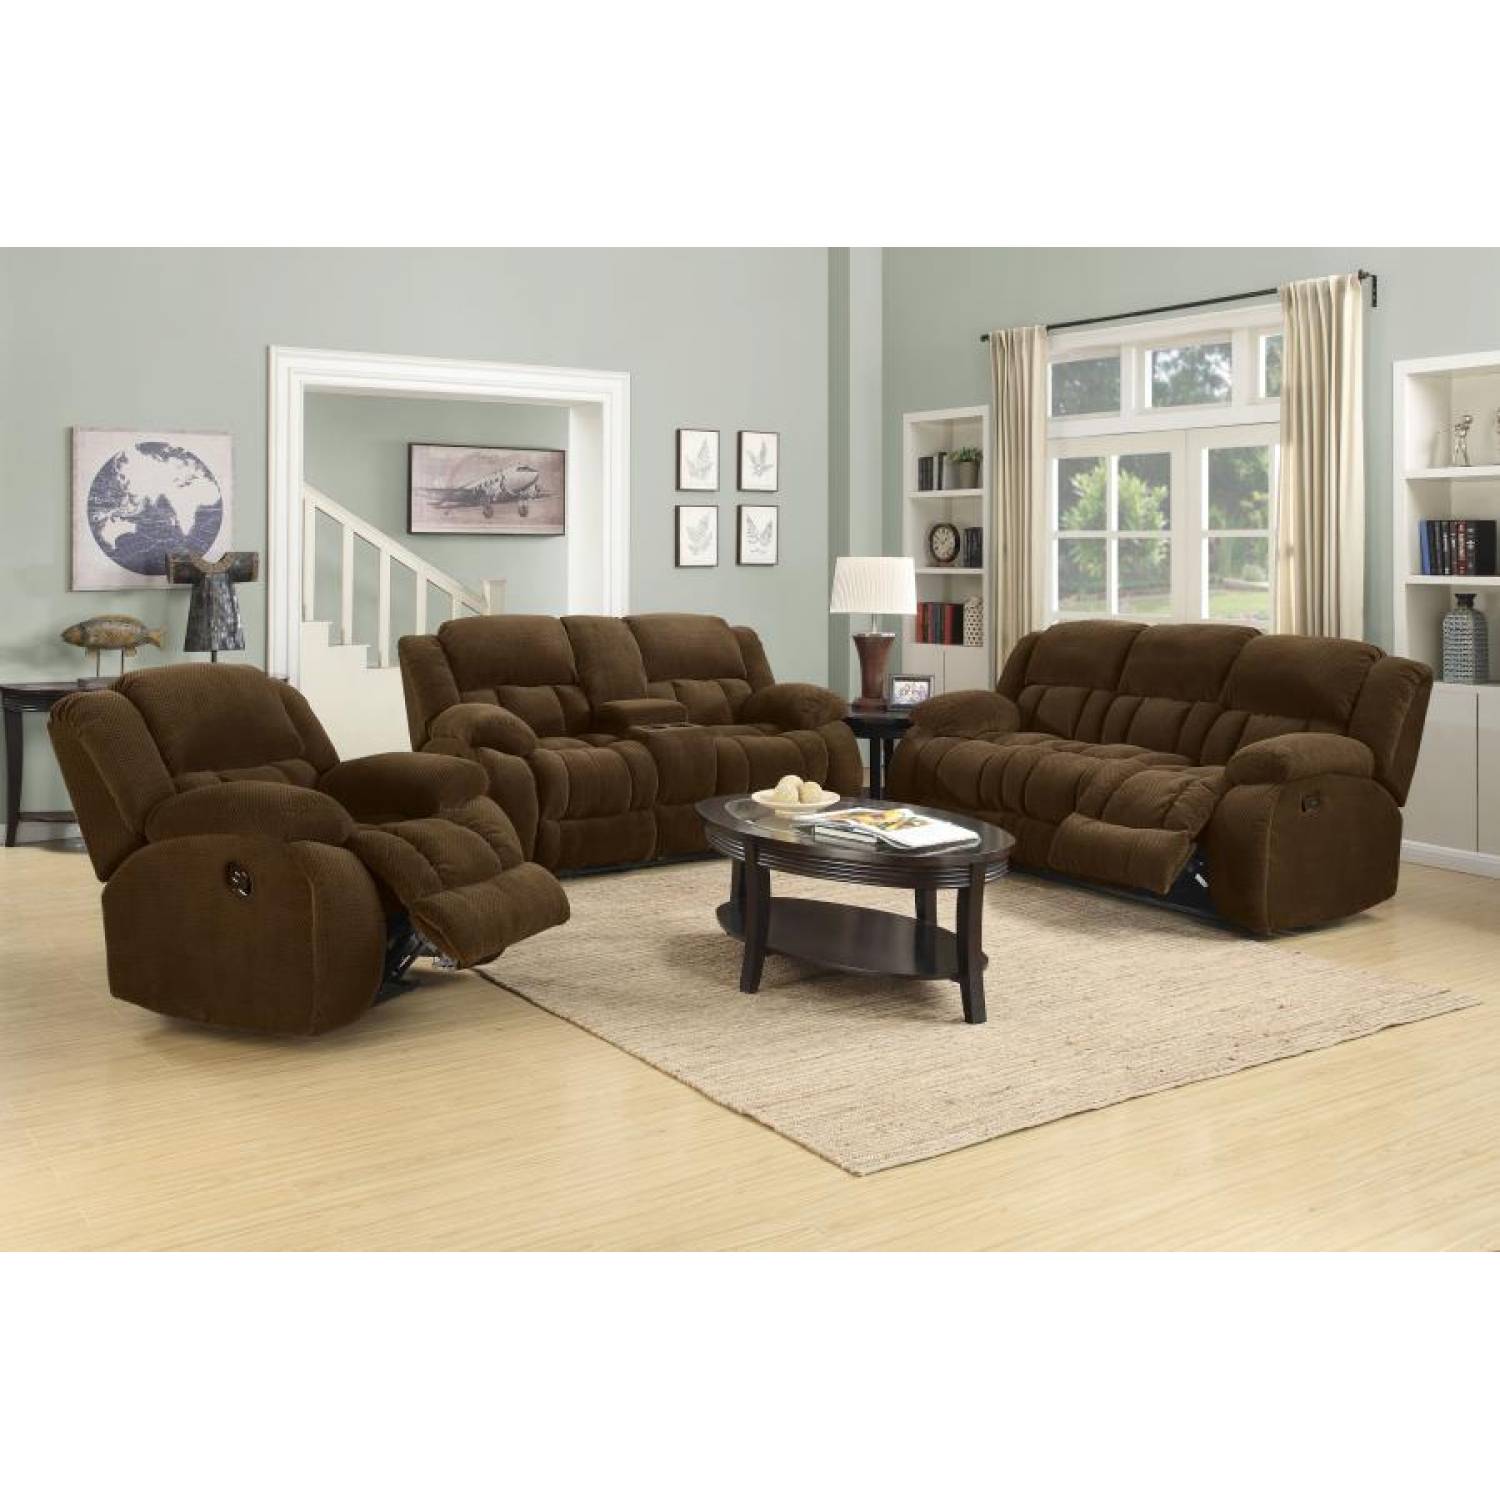 Weissman 3 Piece Reclining Living Room Set 3PC SOFA LOVE RECLINER 601924 S3